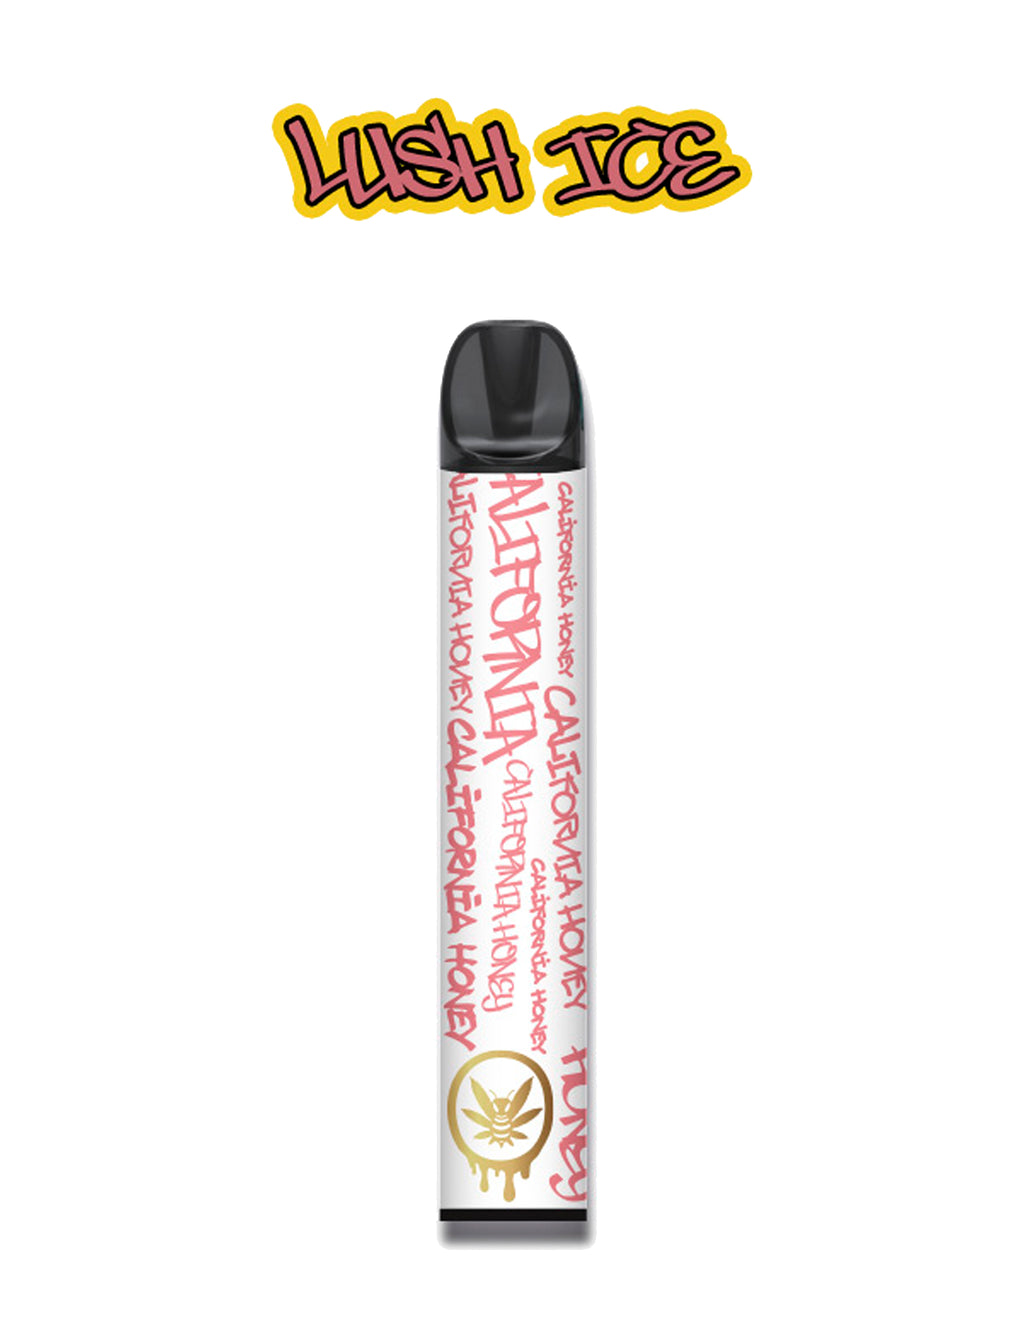 Nicotine Free Vape - Lush Ice